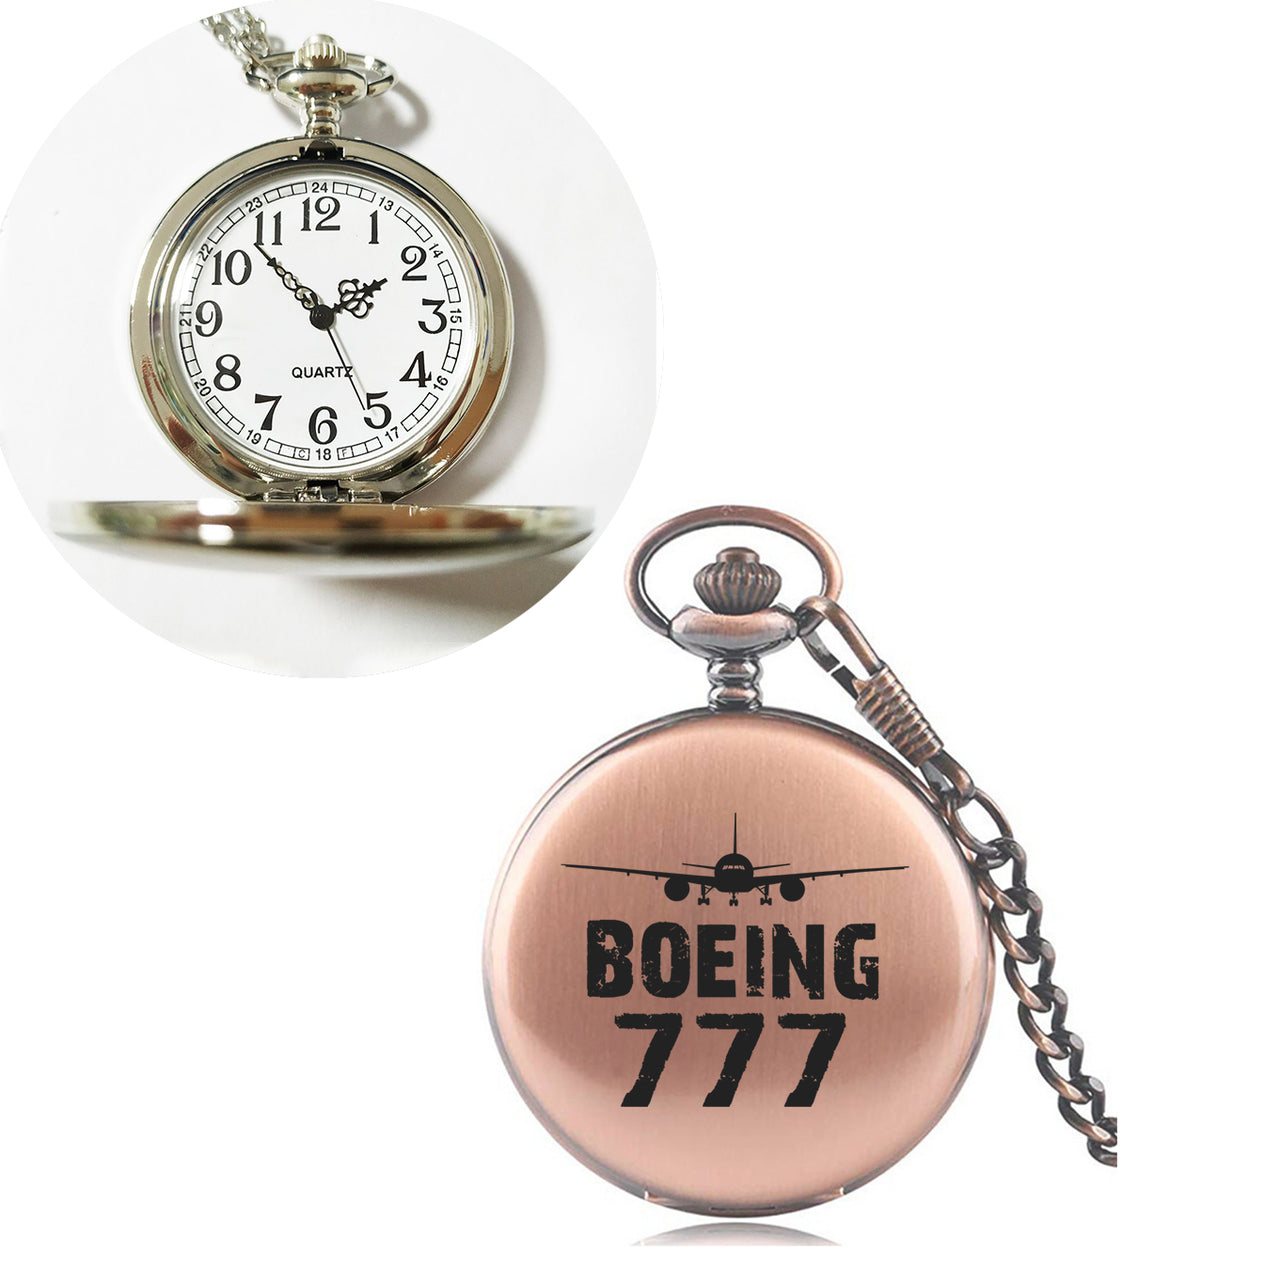 Boeing 777 & Plane Designed Pocket Watches